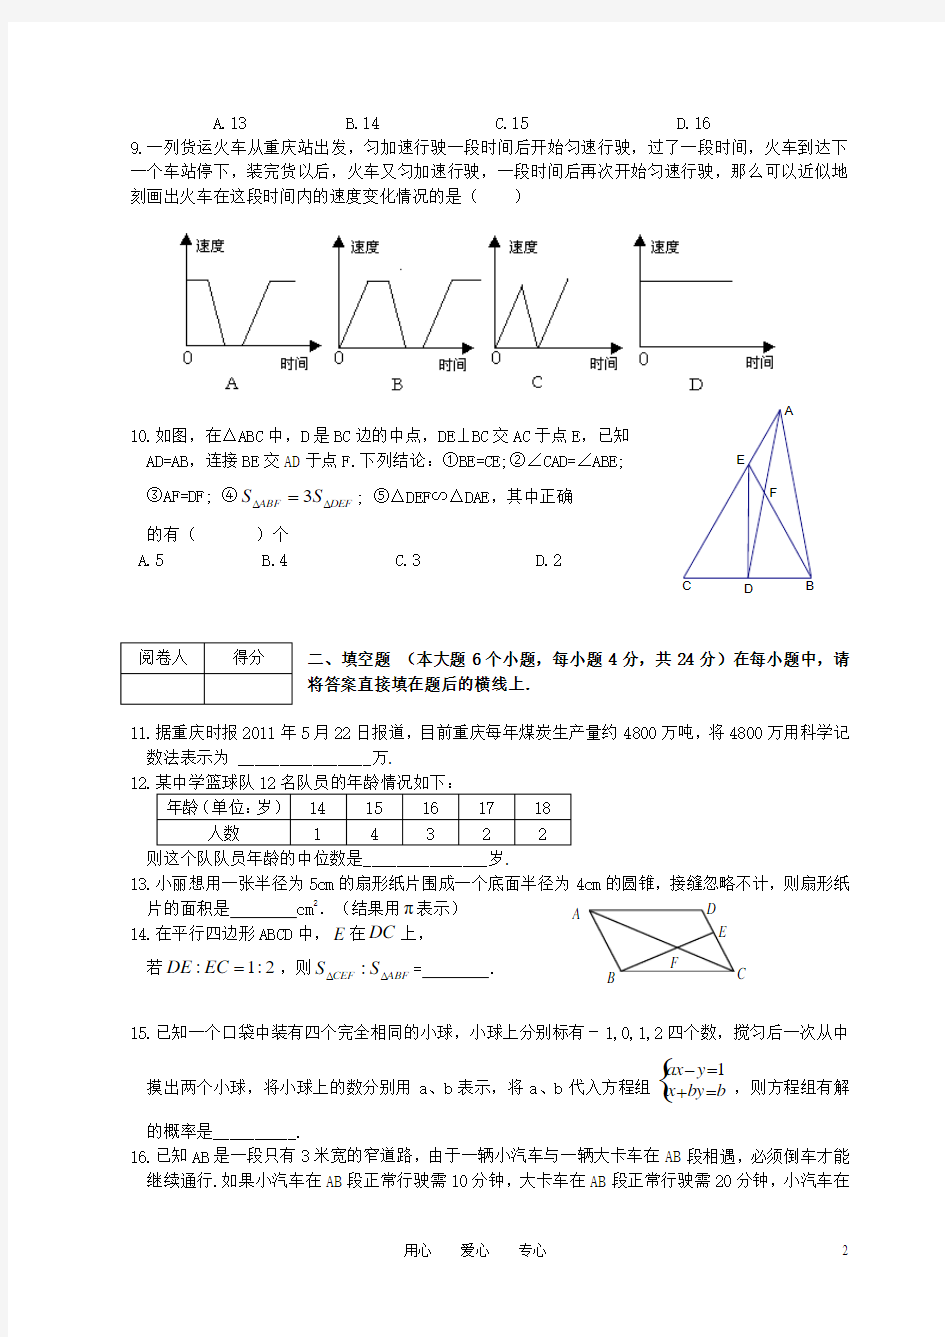 重庆一中初2011级中考数学模拟试题